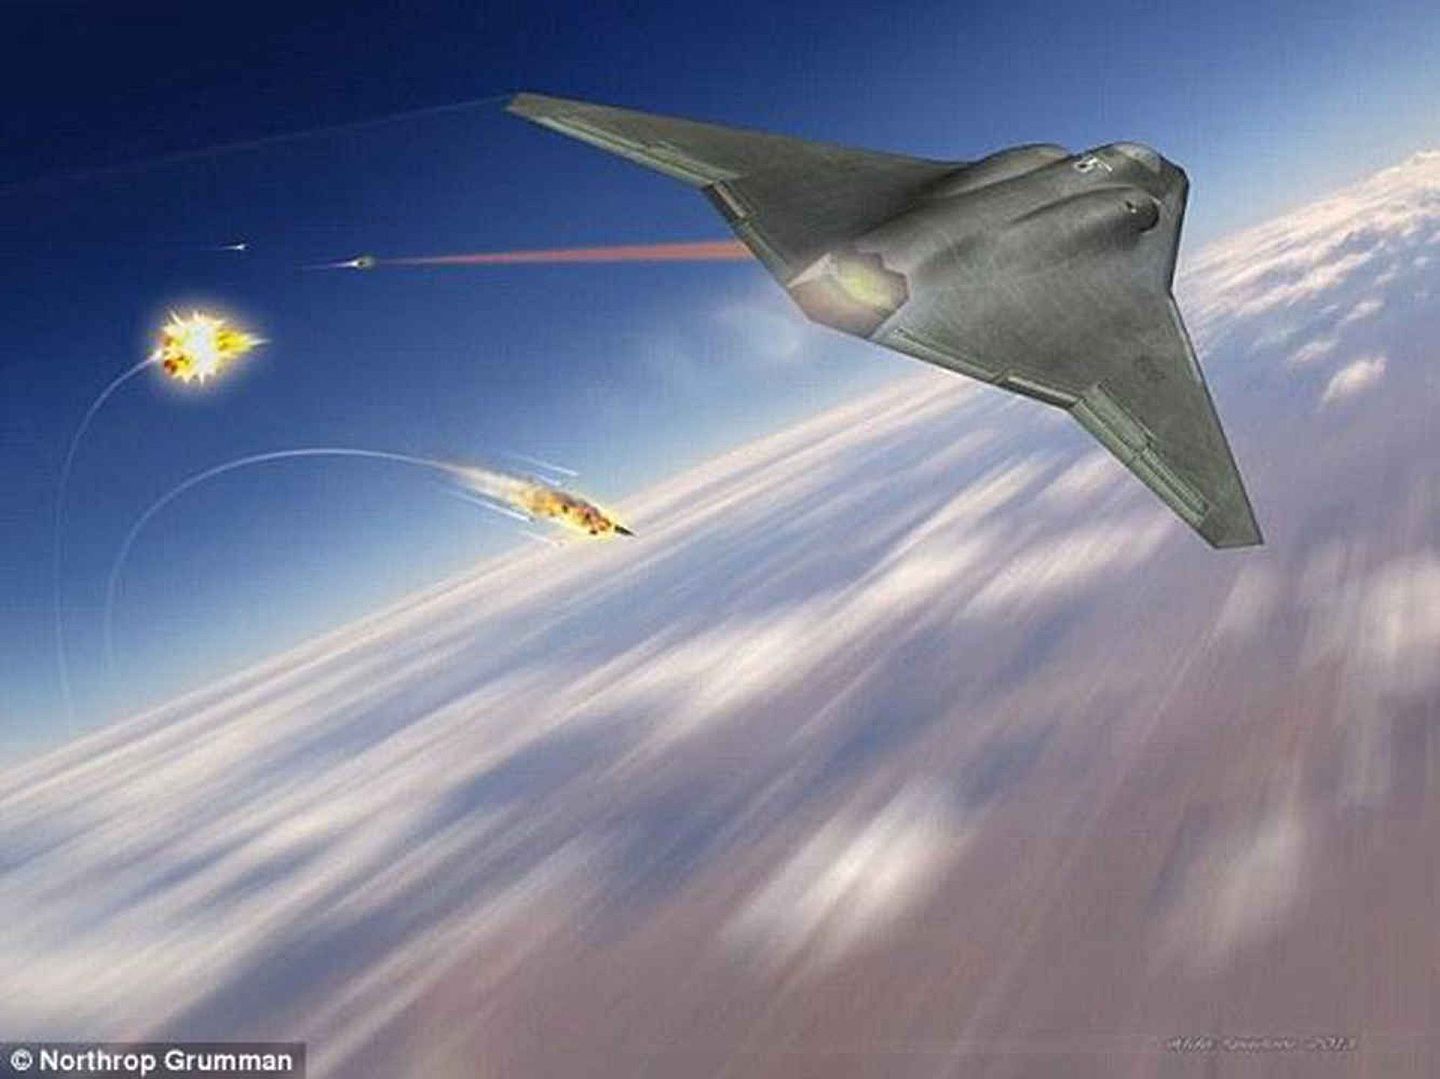 美国三大战斗机制造商之一的诺斯罗普格鲁曼公司，发布下一代战斗机概念图。（Northrop Grumman）